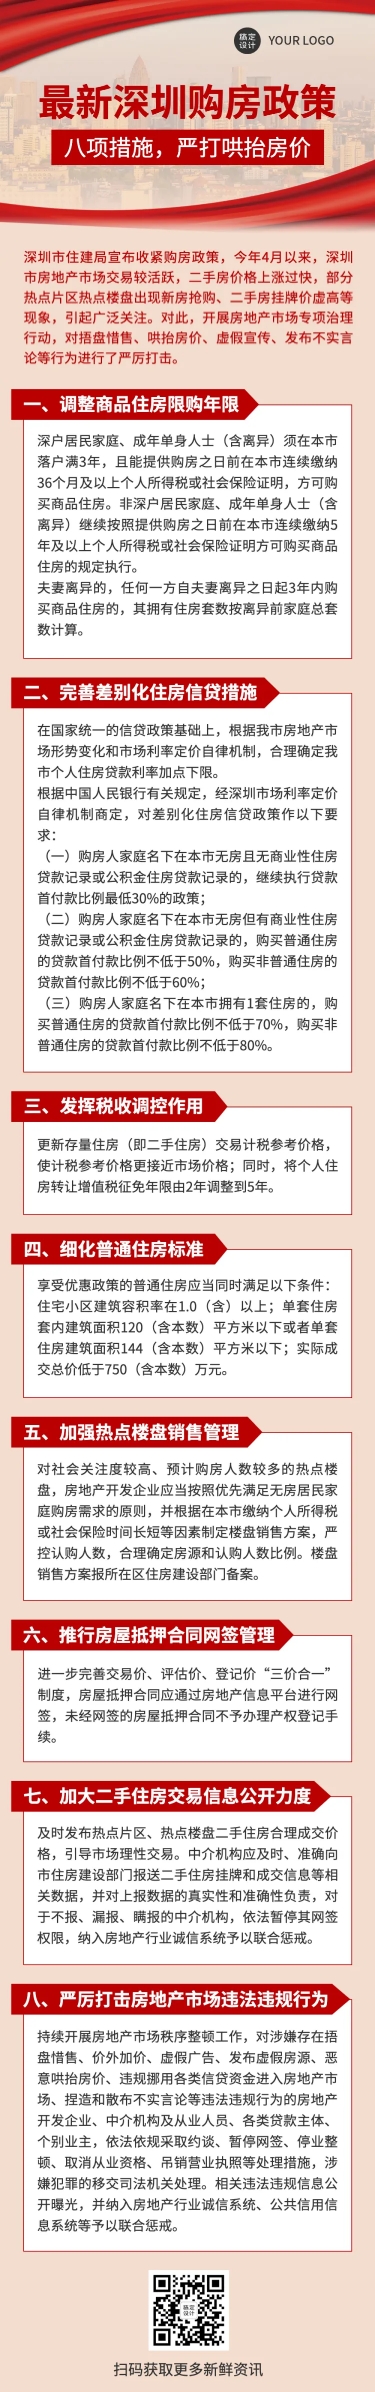 新闻政策解读党政融媒体文章长图